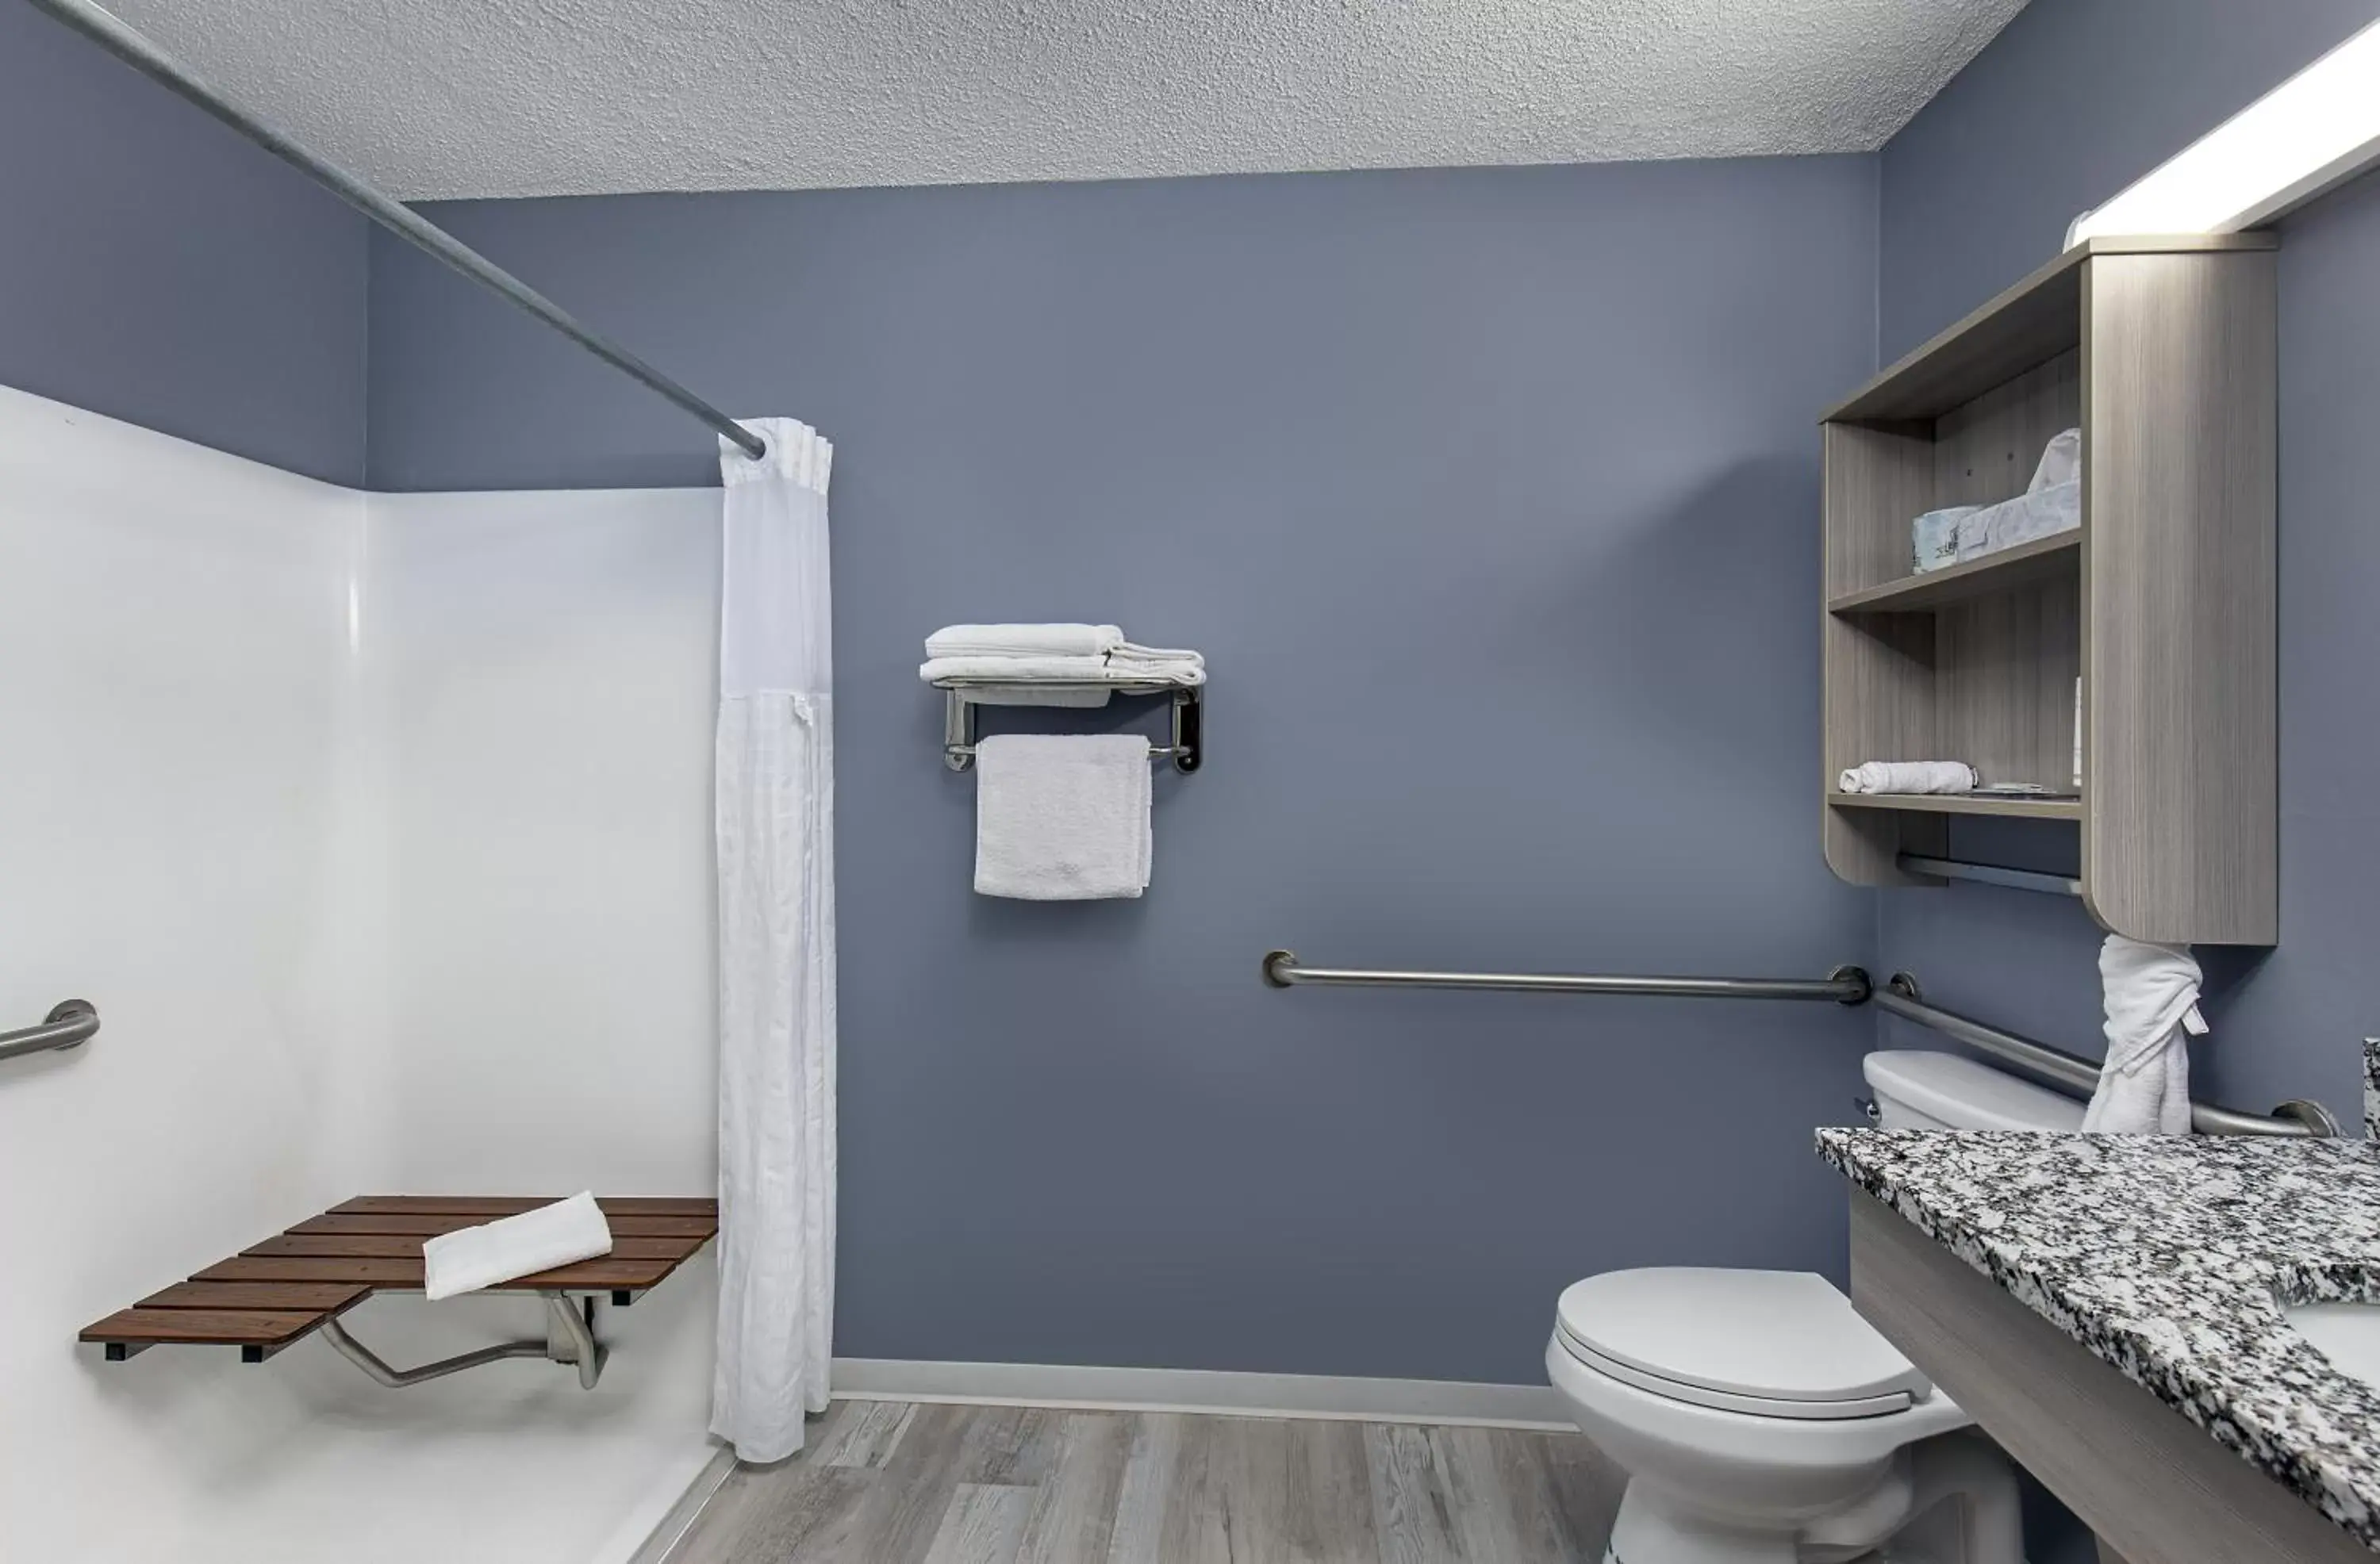 Bathroom in Microtel Inn & Suites by Wyndham Dry Ridge